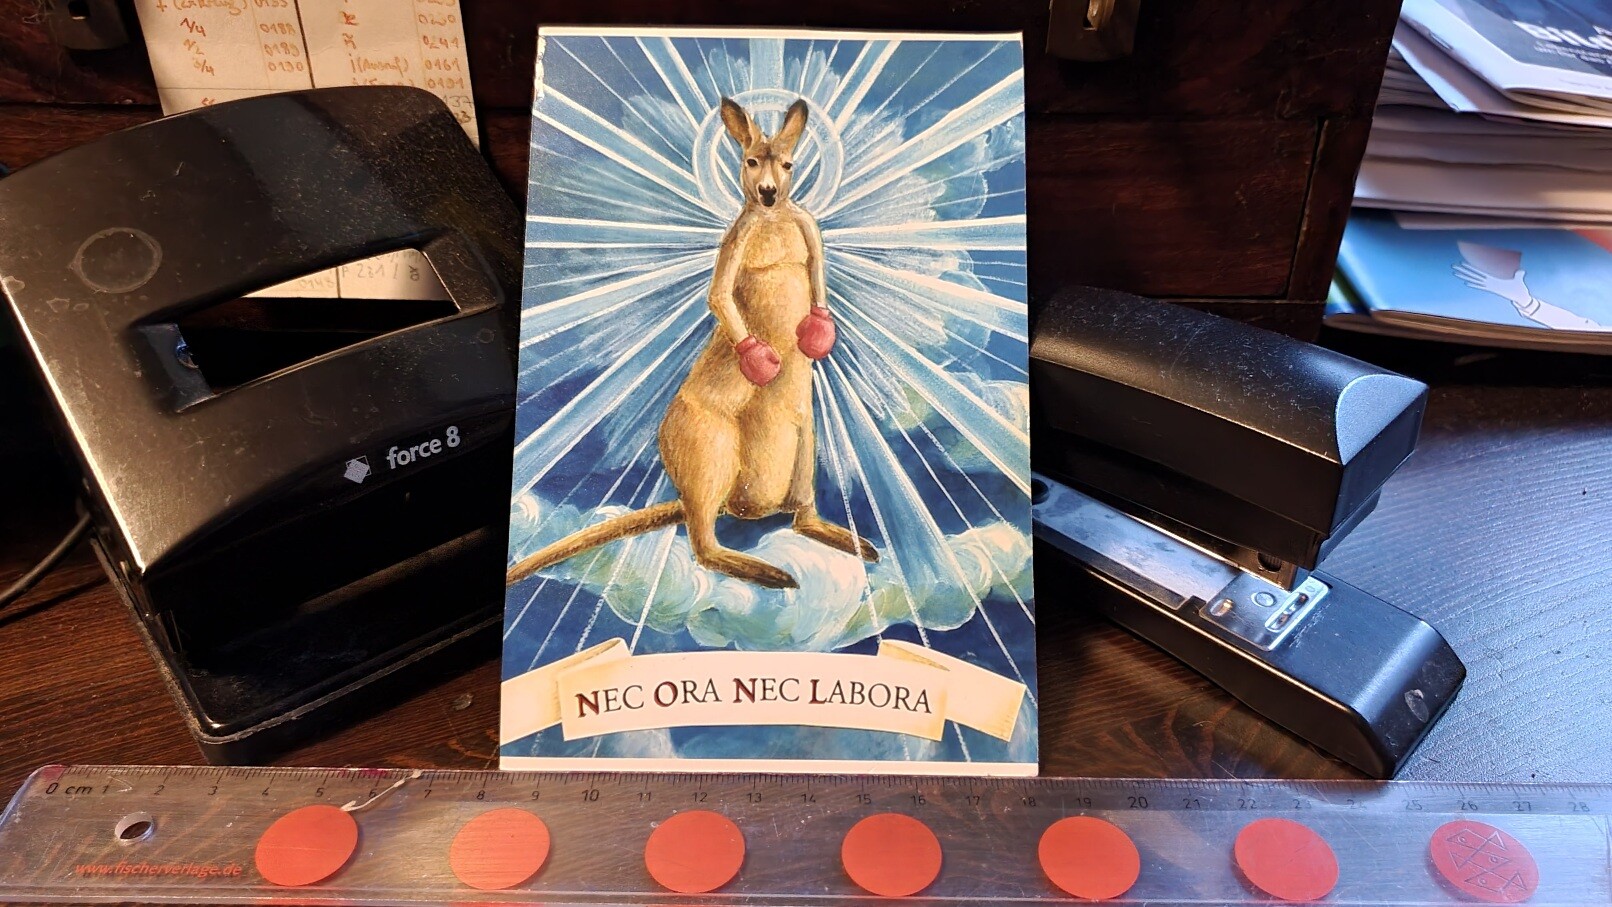 Arrangement mit Locher, Tacker, Lineal und einer Postkarte vom Känguru mit Heiligenschein und dem Slogan 'nec ora nec labora'